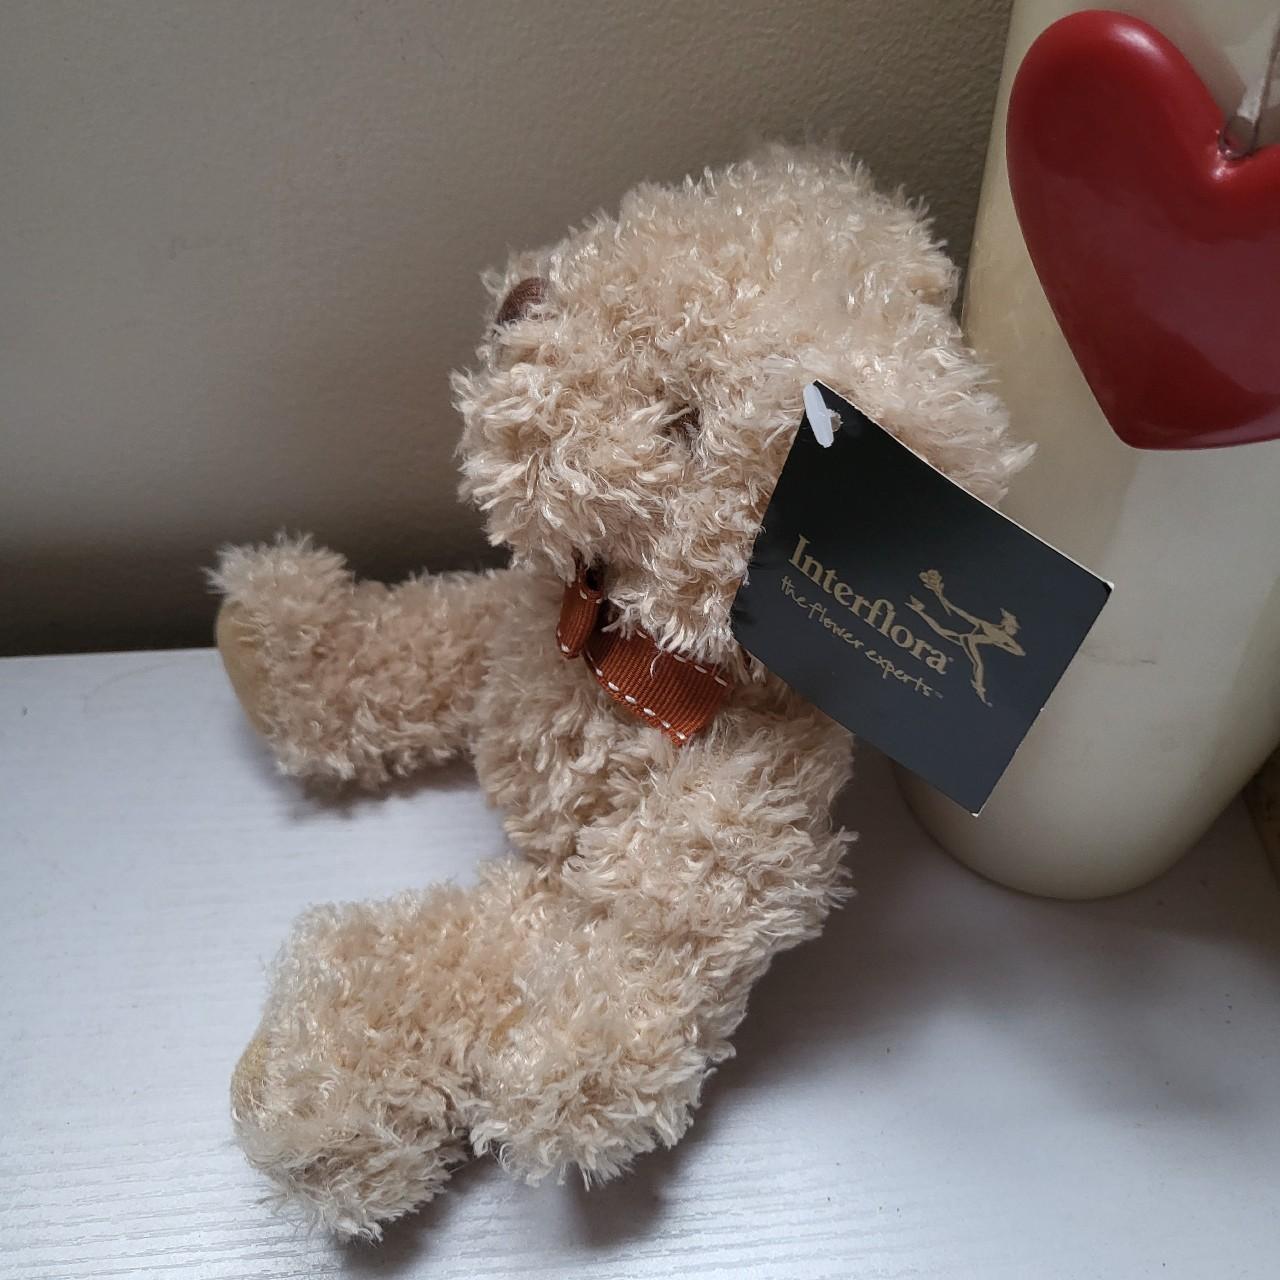 INTERFLORA Cute Teddy Bear Soft Plush Toy Approx 7.5... - Depop